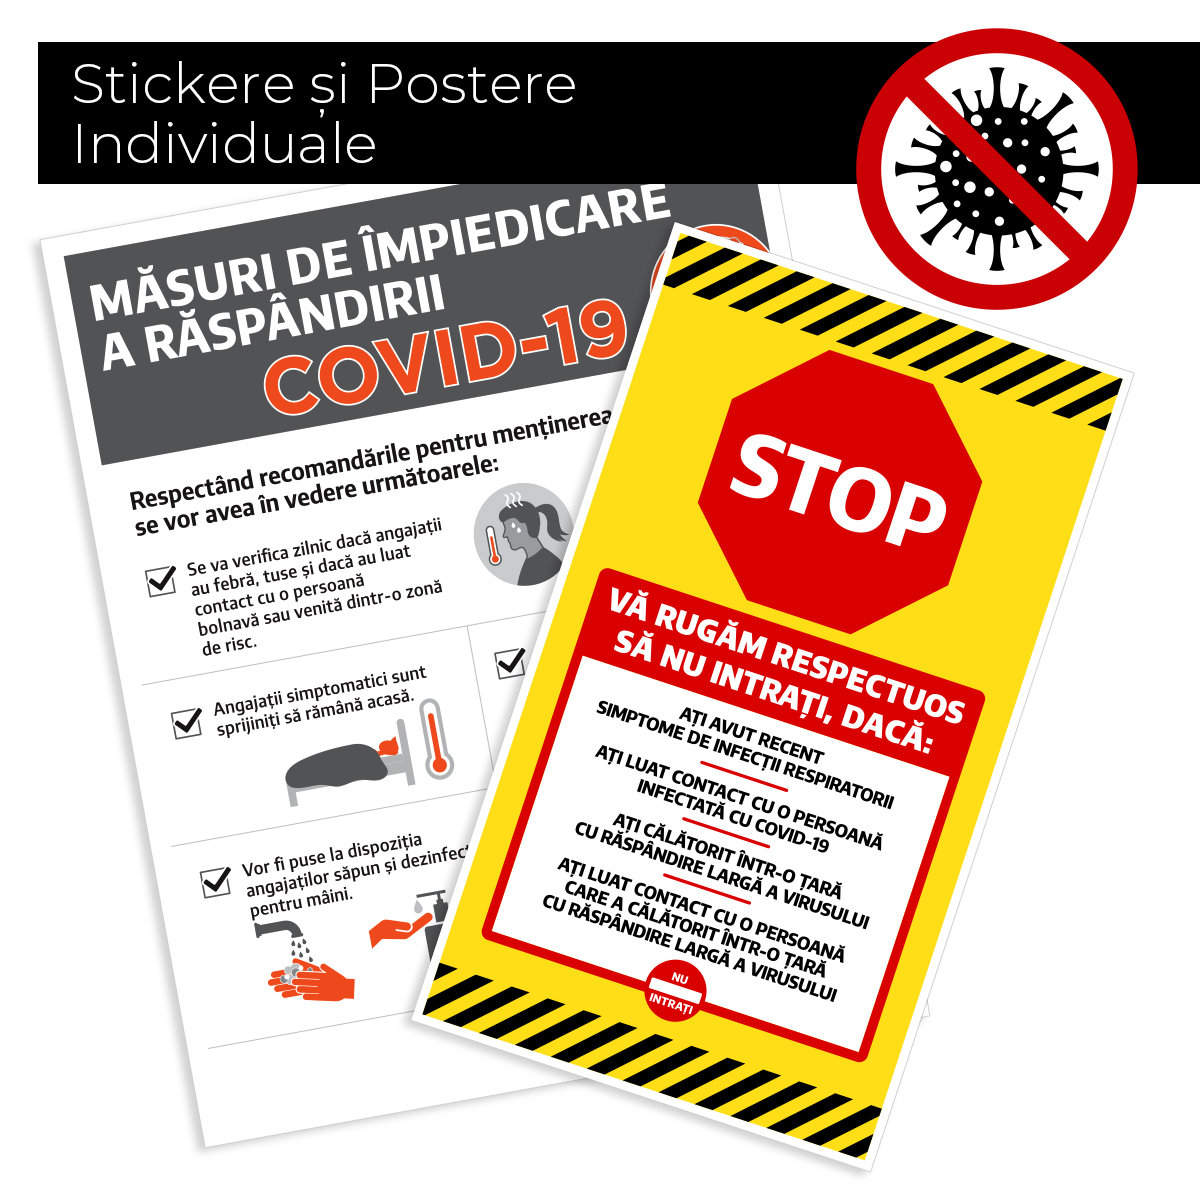 Covid-19 – Stickere si Postere Individuale